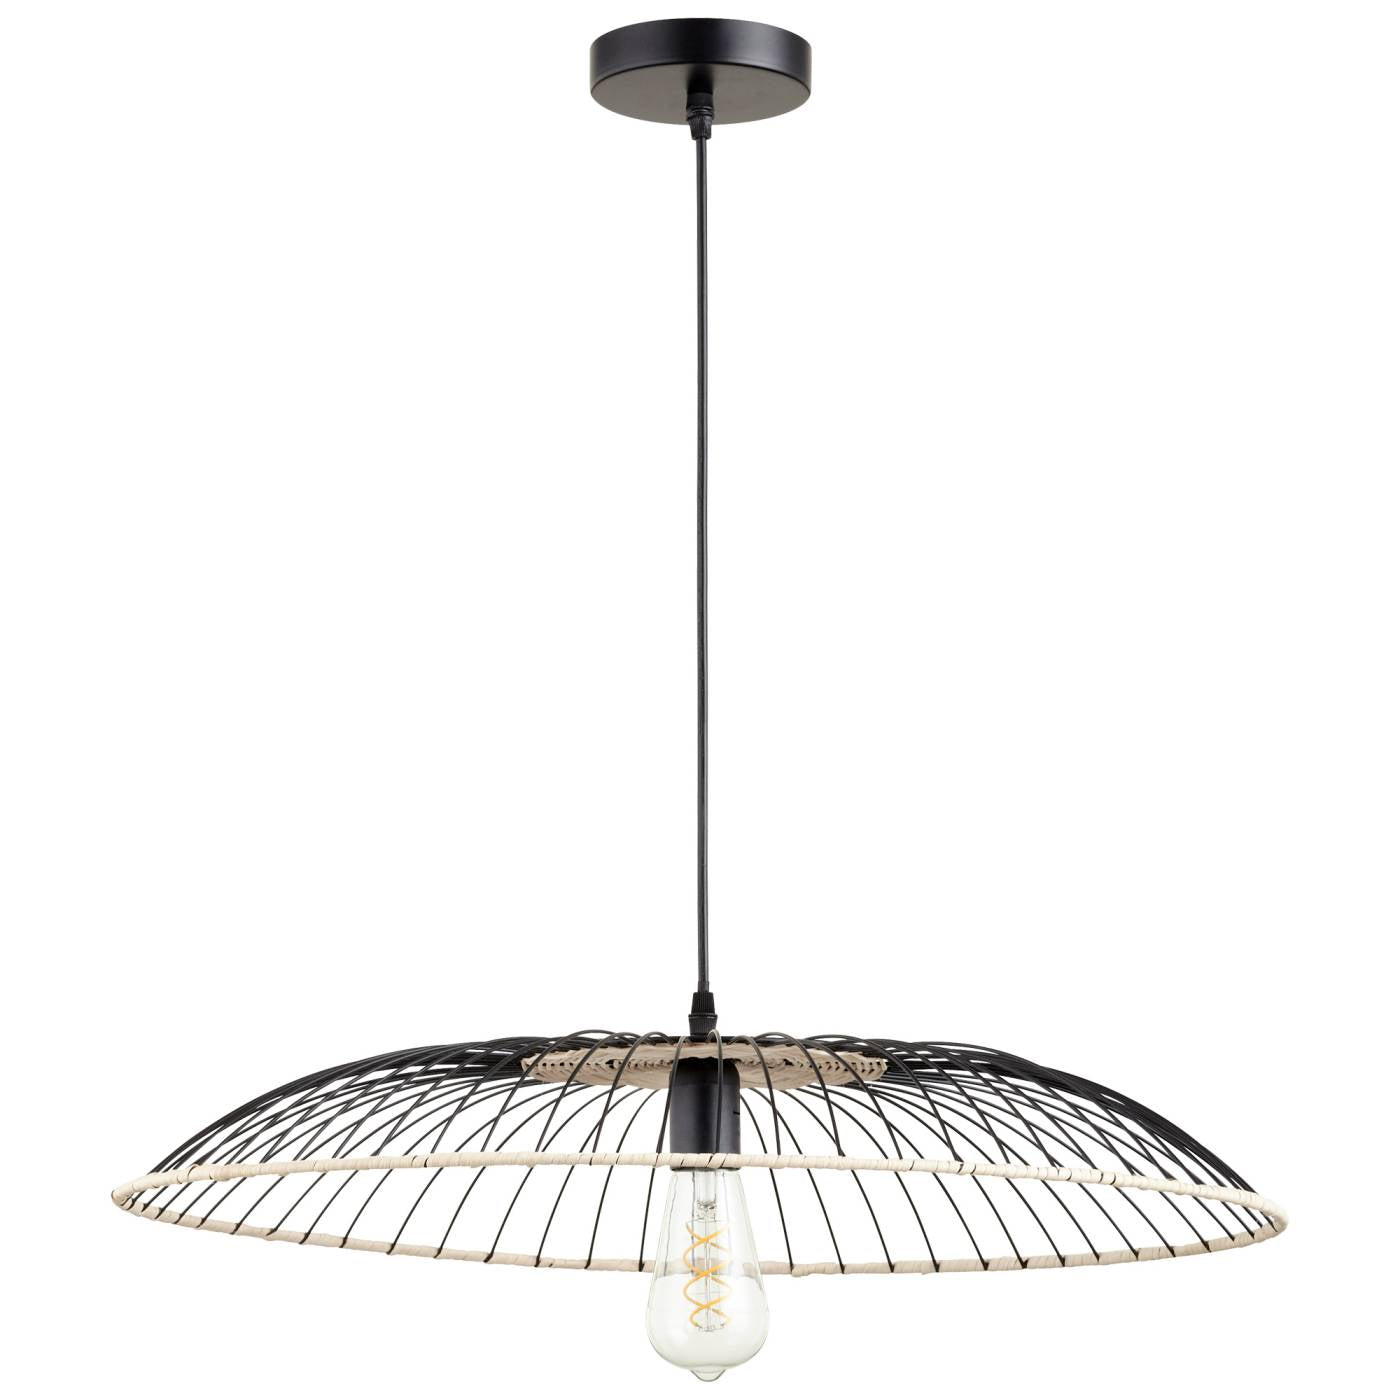 Parasol Pendant Lamp By Cyan Design | Cyan Design | Modishstore - 3